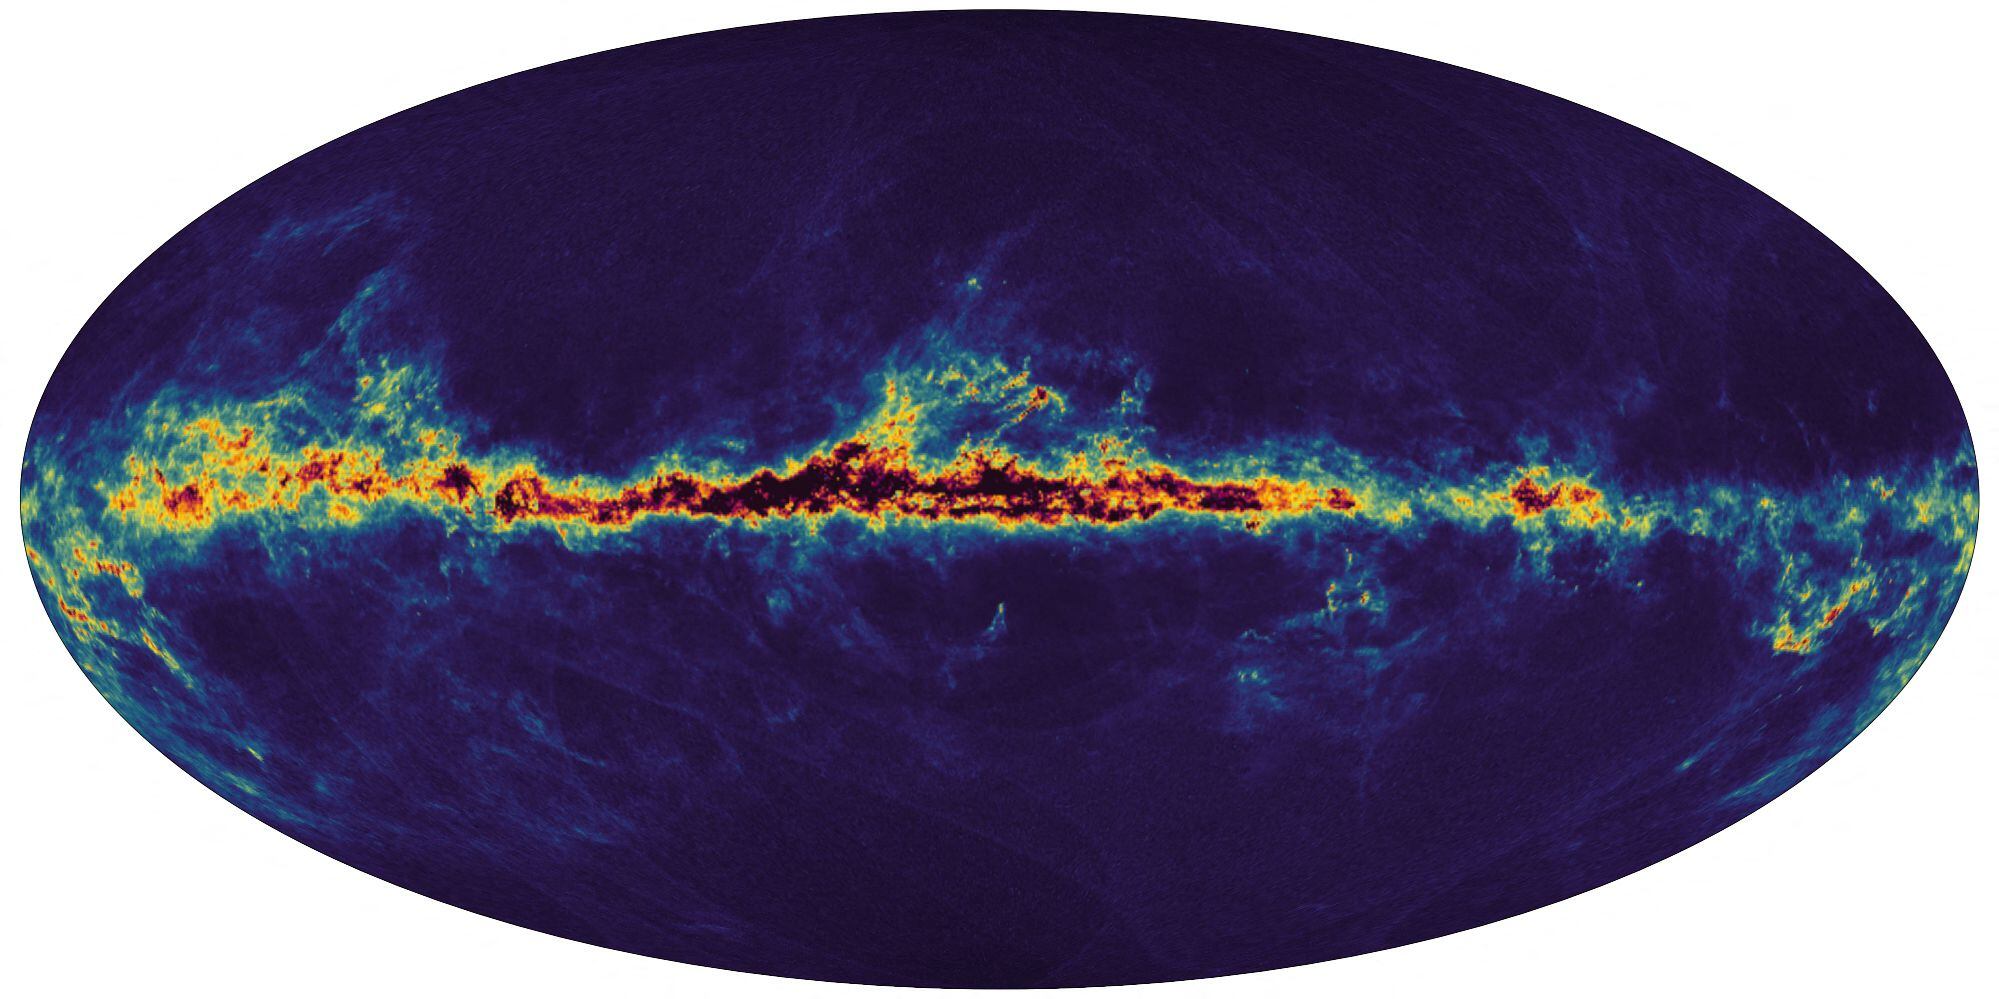 Esta imagen del folleto publicada por la Agencia Espacial Europea (ESA) el 13 de junio de 2022 muestra un mapa de la Vía Láctea elaborado con nuevos datos recopilados por la sonda espacial Gaia de la ESA, que muestra el polvo interestelar que llena la galaxia.